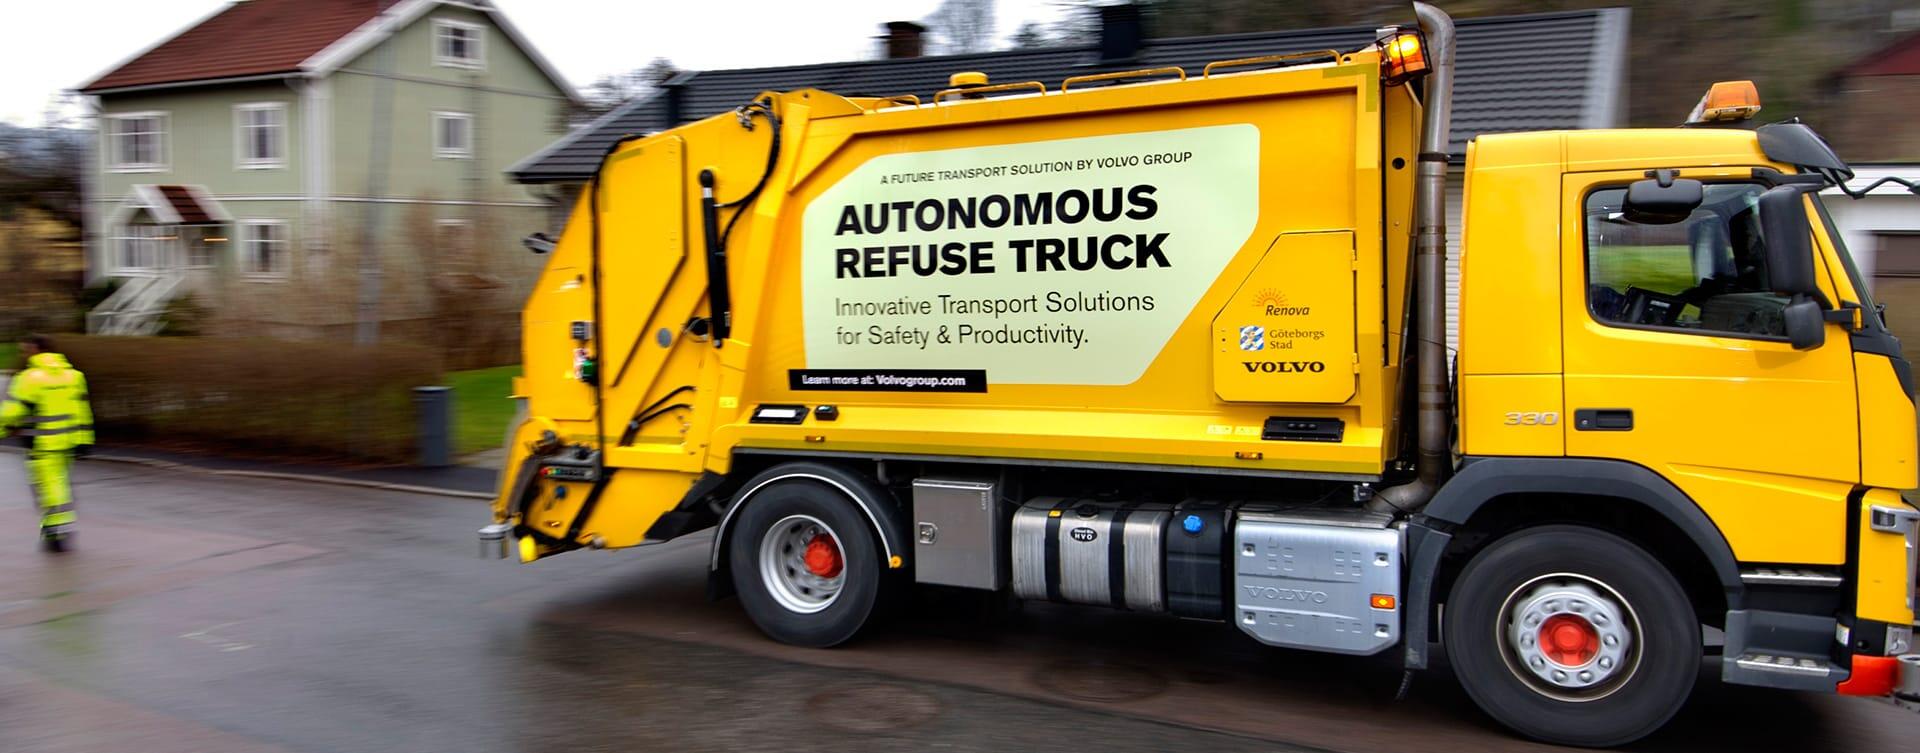 Veiligheid staat voorop bij test met zelfrijdende vuilniswagen door Volvo Trucks en Renova